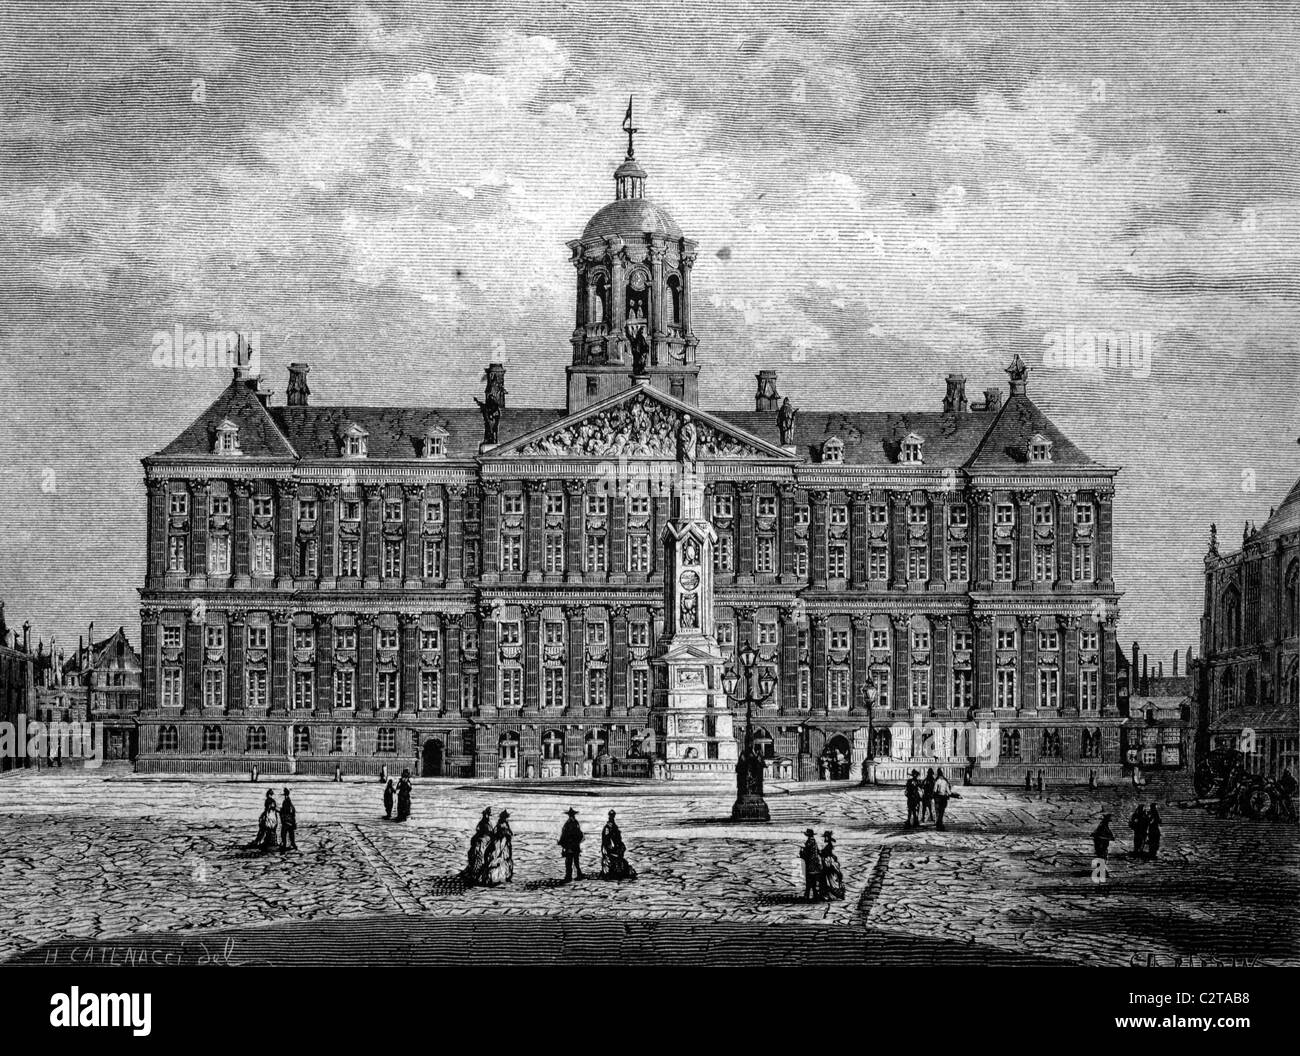 Palais Royal d'Amsterdam, Pays-Bas, illustration historique, vers 1886 Banque D'Images